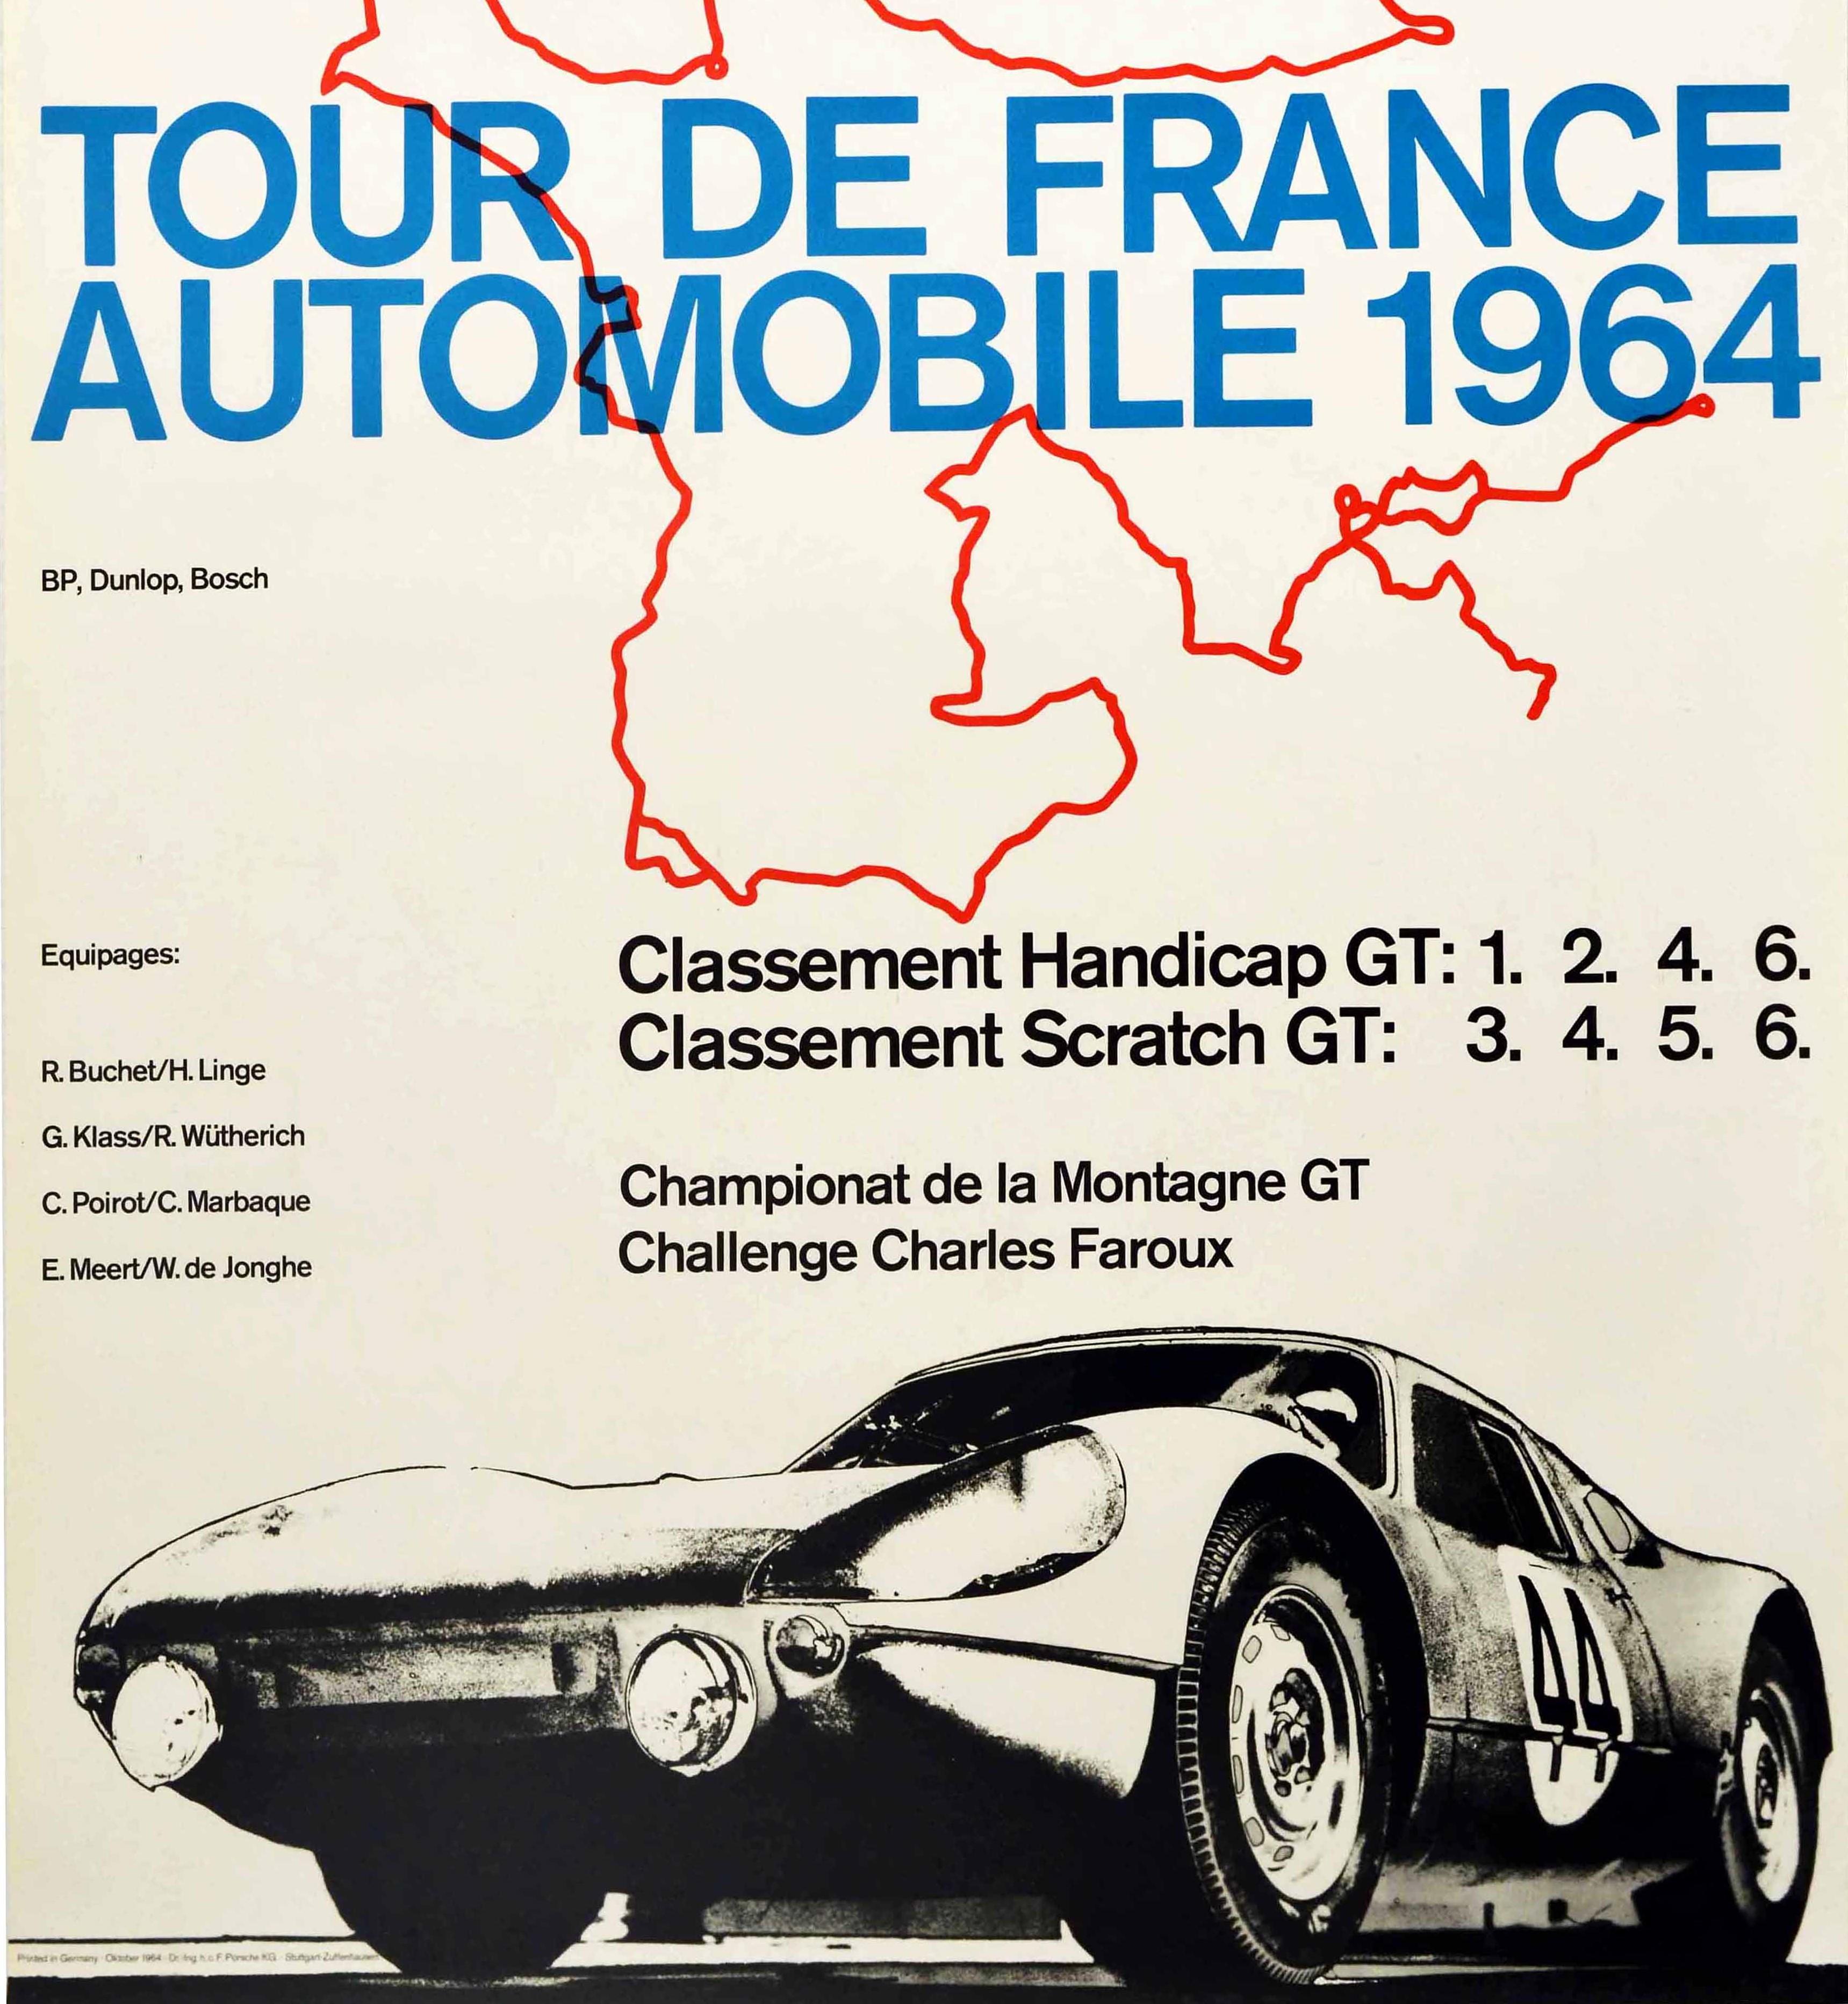 1964 tour de france automobile